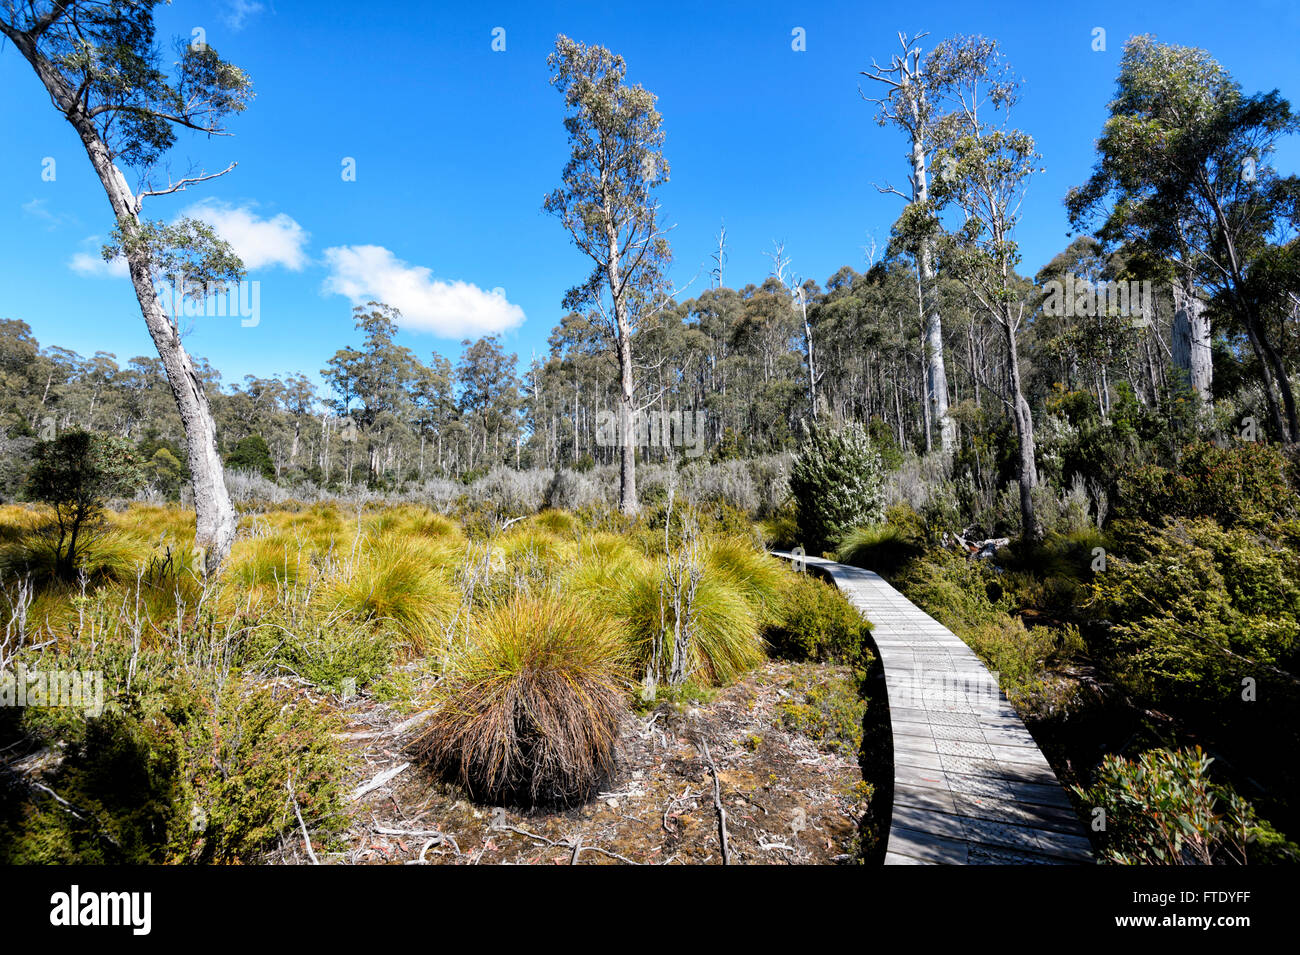 L'herbe (bouton Gymnoschoenus tricolor), Lake St Clair, socle Mountain-Lake St Clair National Park, Tasmanie, TAS, Australie Banque D'Images